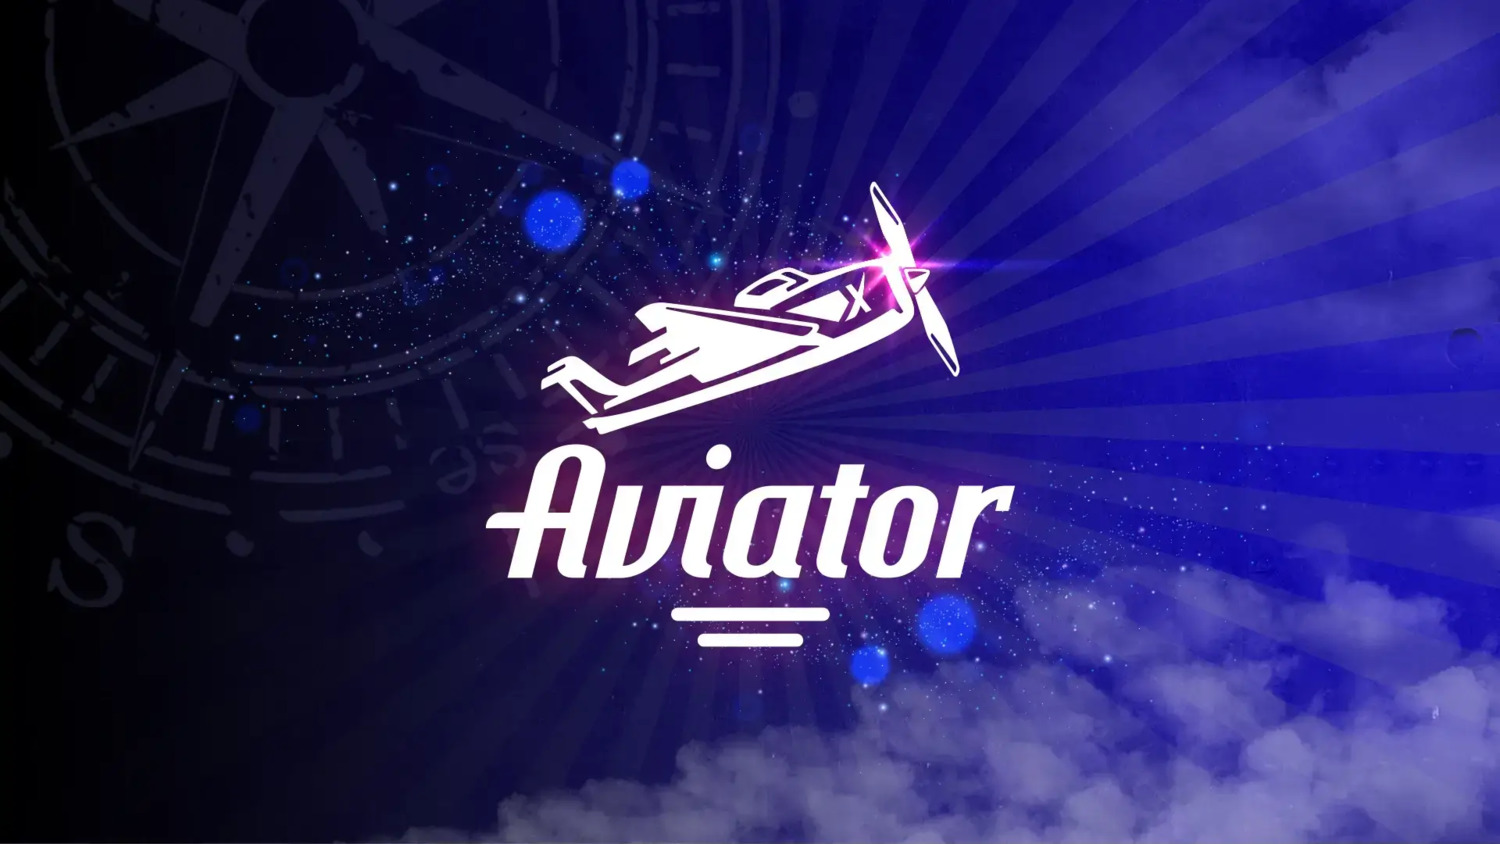 Авиатор - онлайн игра, которая забирает топы, по приросту аудитории.